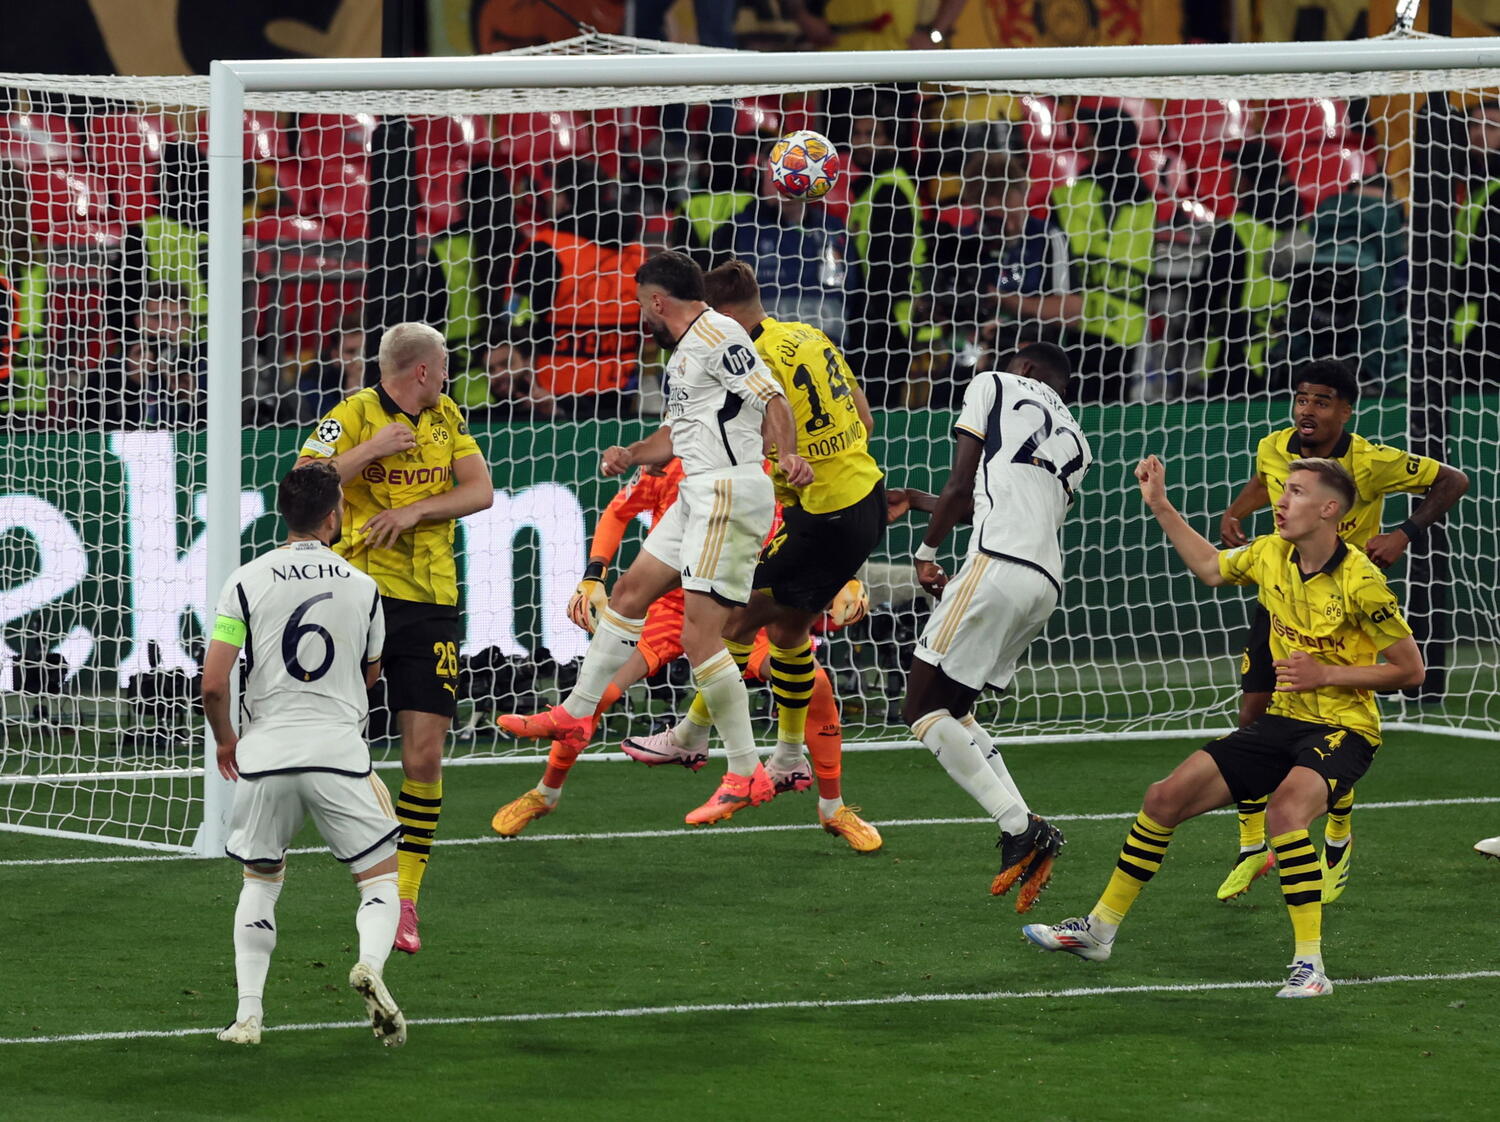 La legge nda del Real Madrid: 2 0 al Borussia Dortmund, è la 15ª Champions League